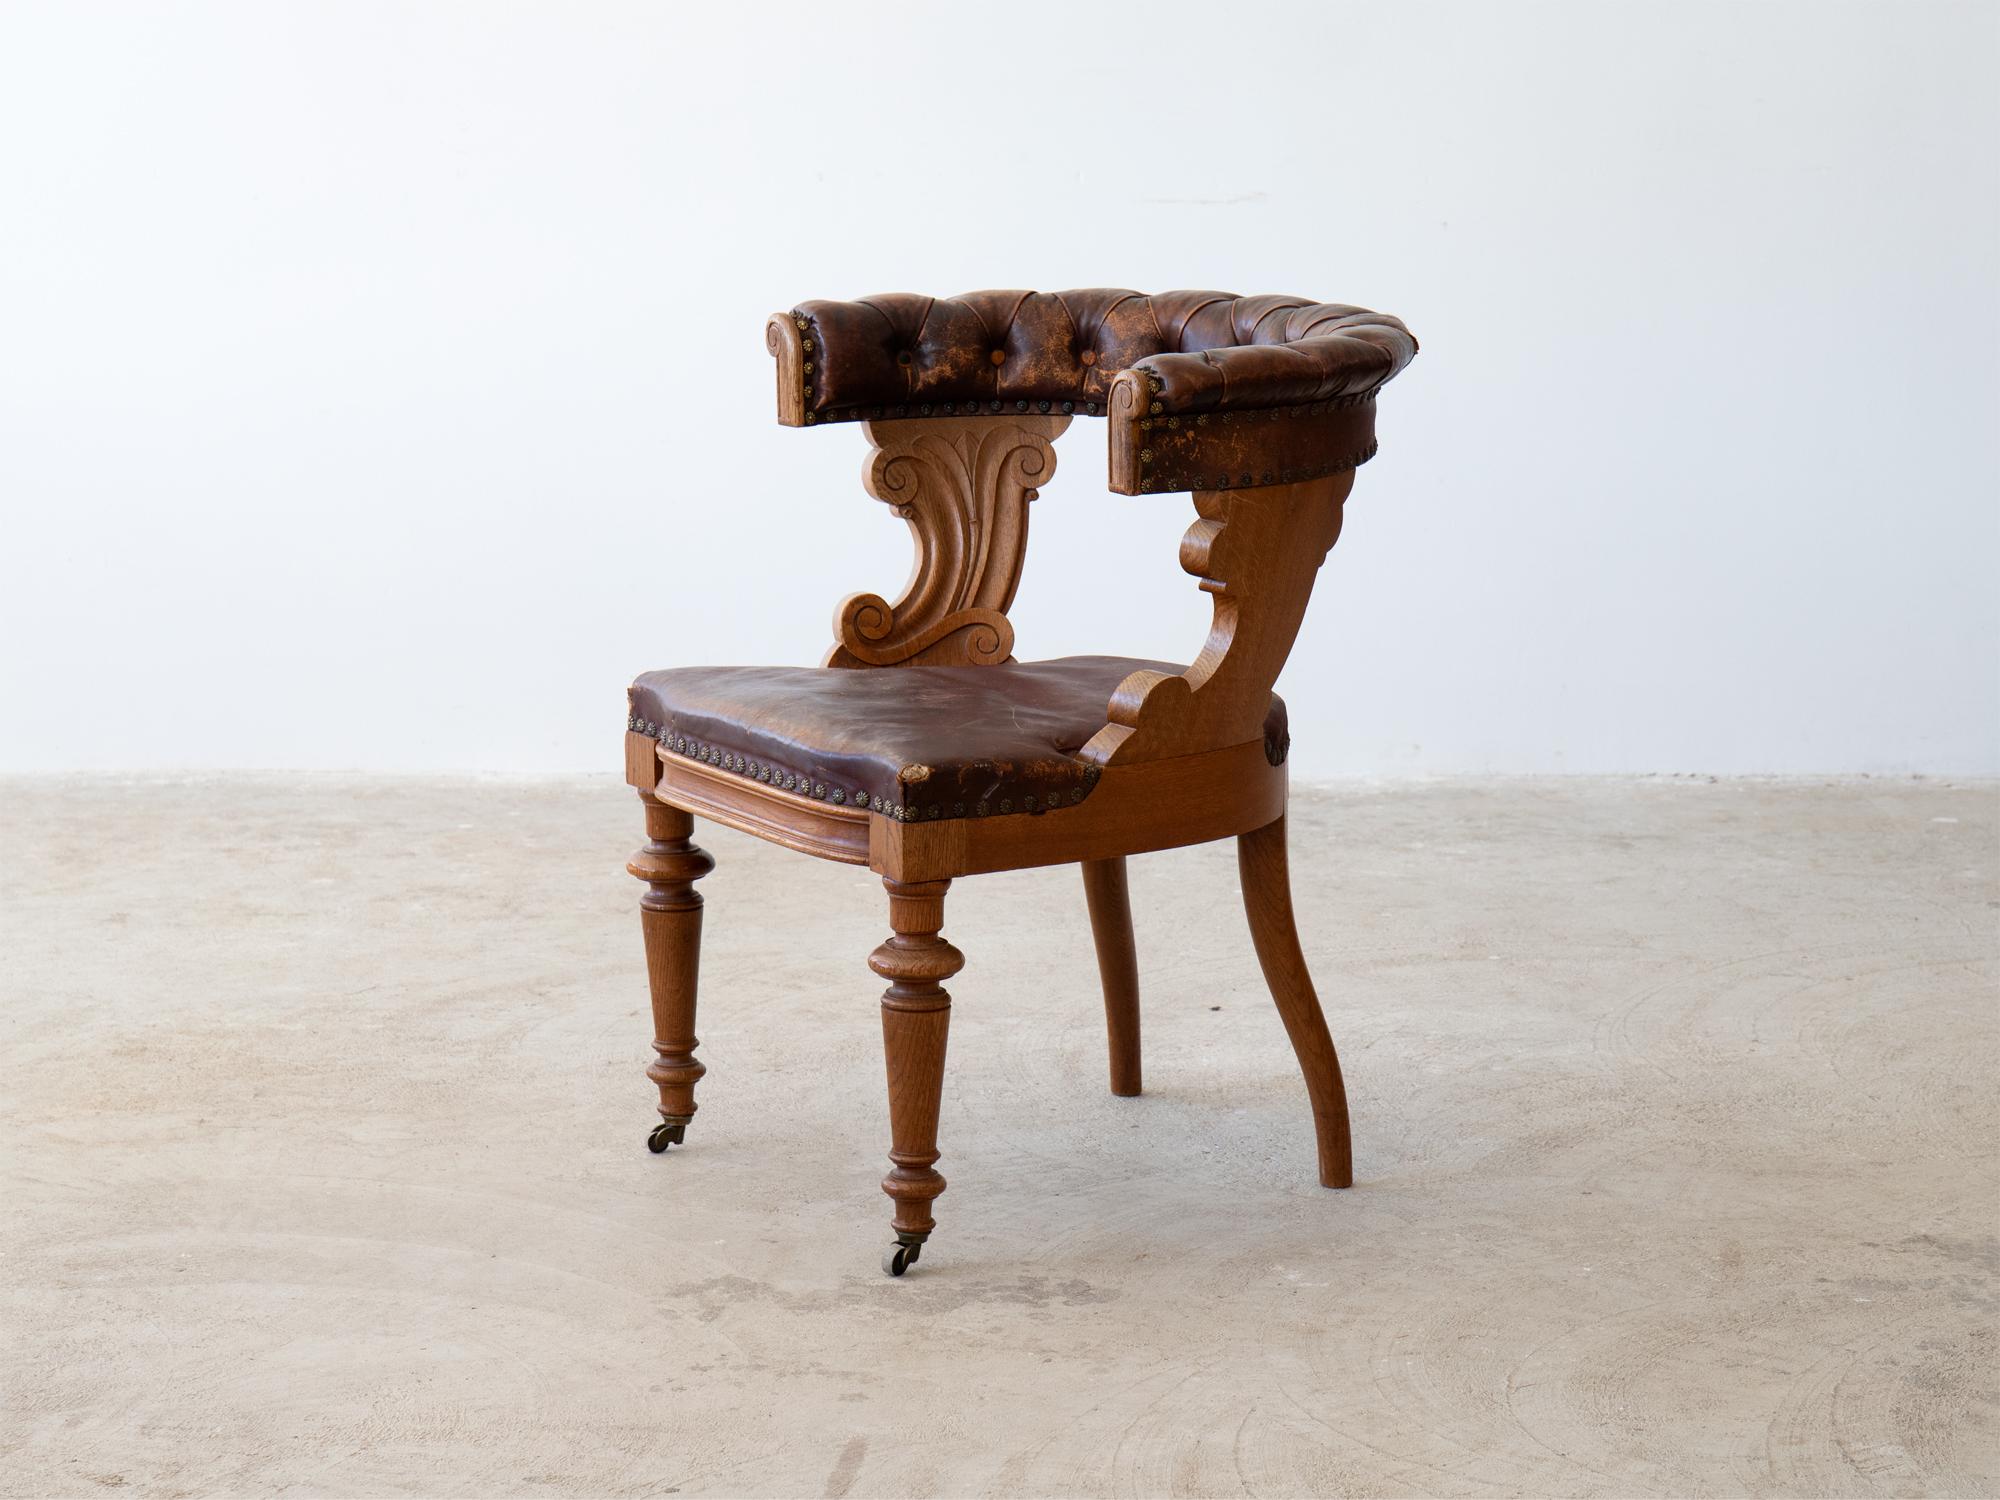 Ein Schreibtischstuhl aus Eichenholz mit einer braunen Lederpolsterung und dekorativen Messingnieten.

Schwedisch, um 1880.

Strukturell gesund. Schöne Abnutzung des gealterten Leders mit einigen Mängeln und fehlenden Knöpfen.

78 x 70 x 63 cm (30.7